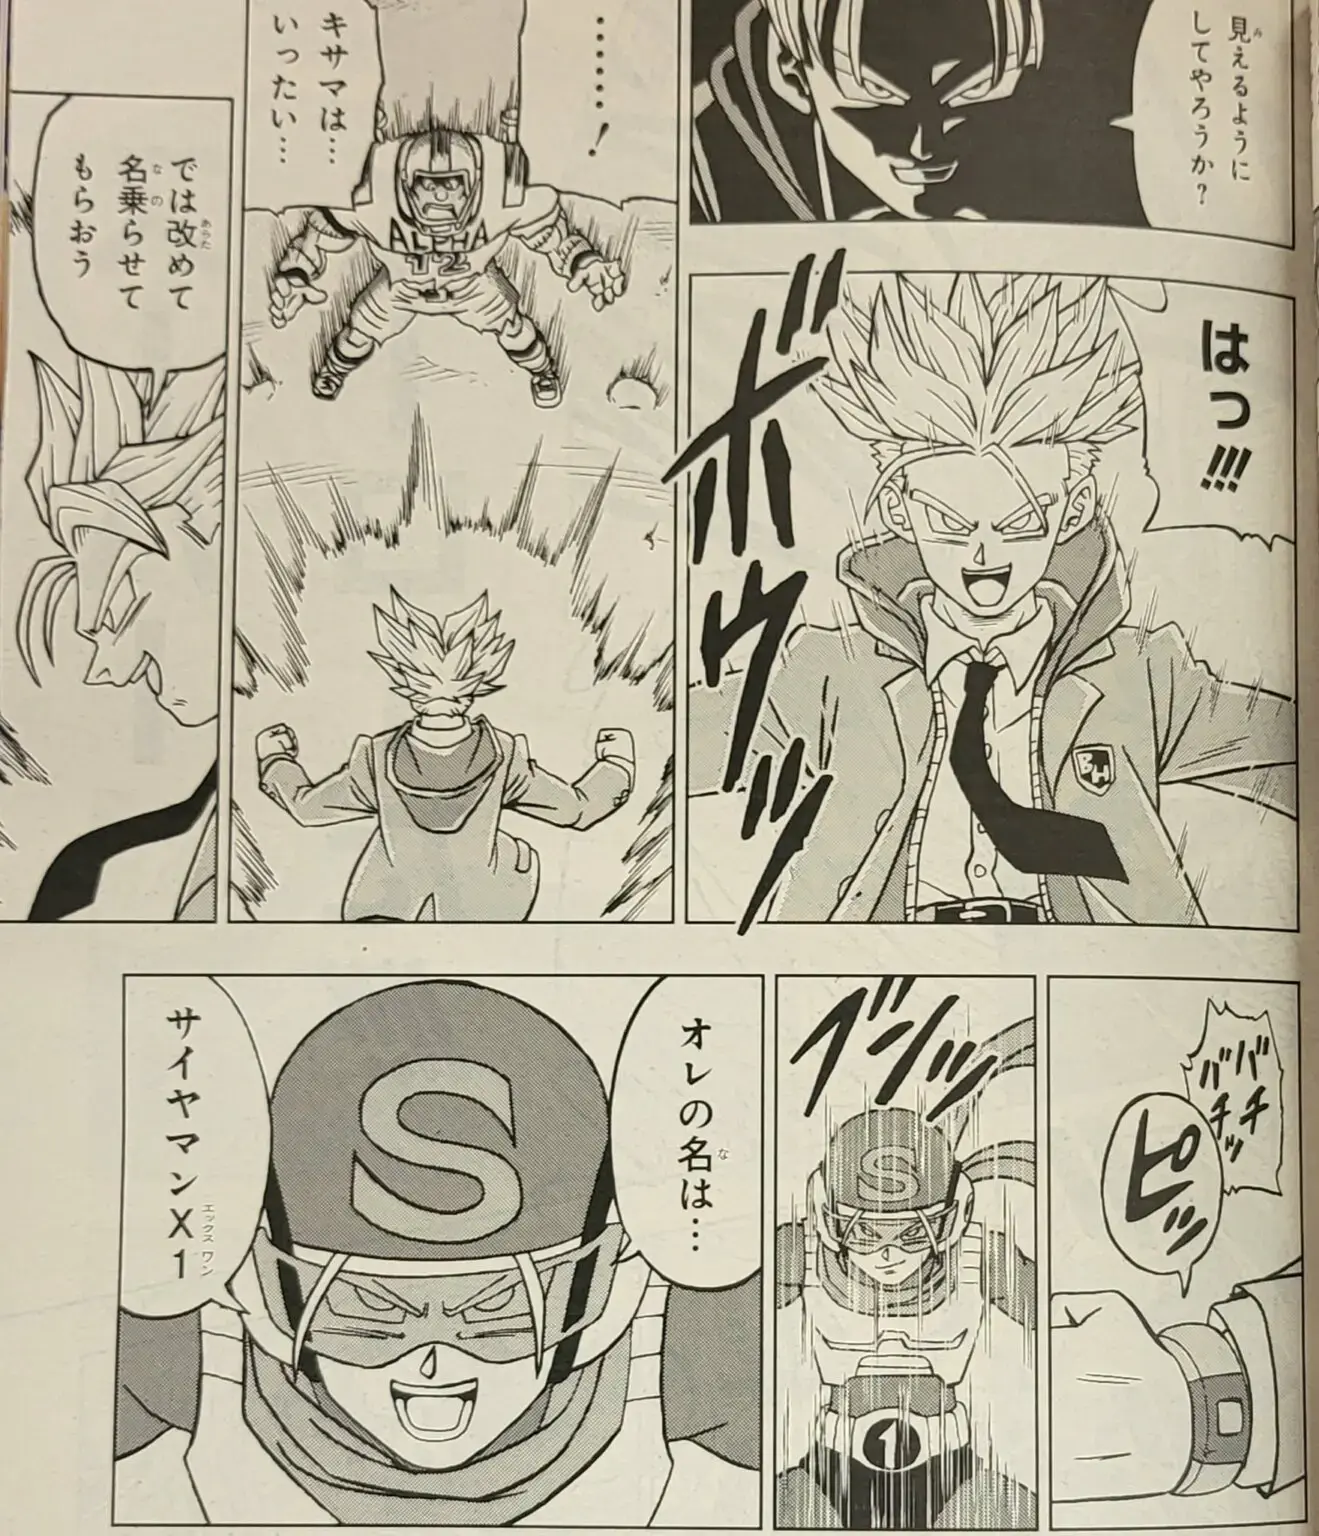 Dragon Ball Super chapitre 88 du manga a été dévoilé avec des images et un résumé ; Goten et Trunks sont des super-héros. 5 6